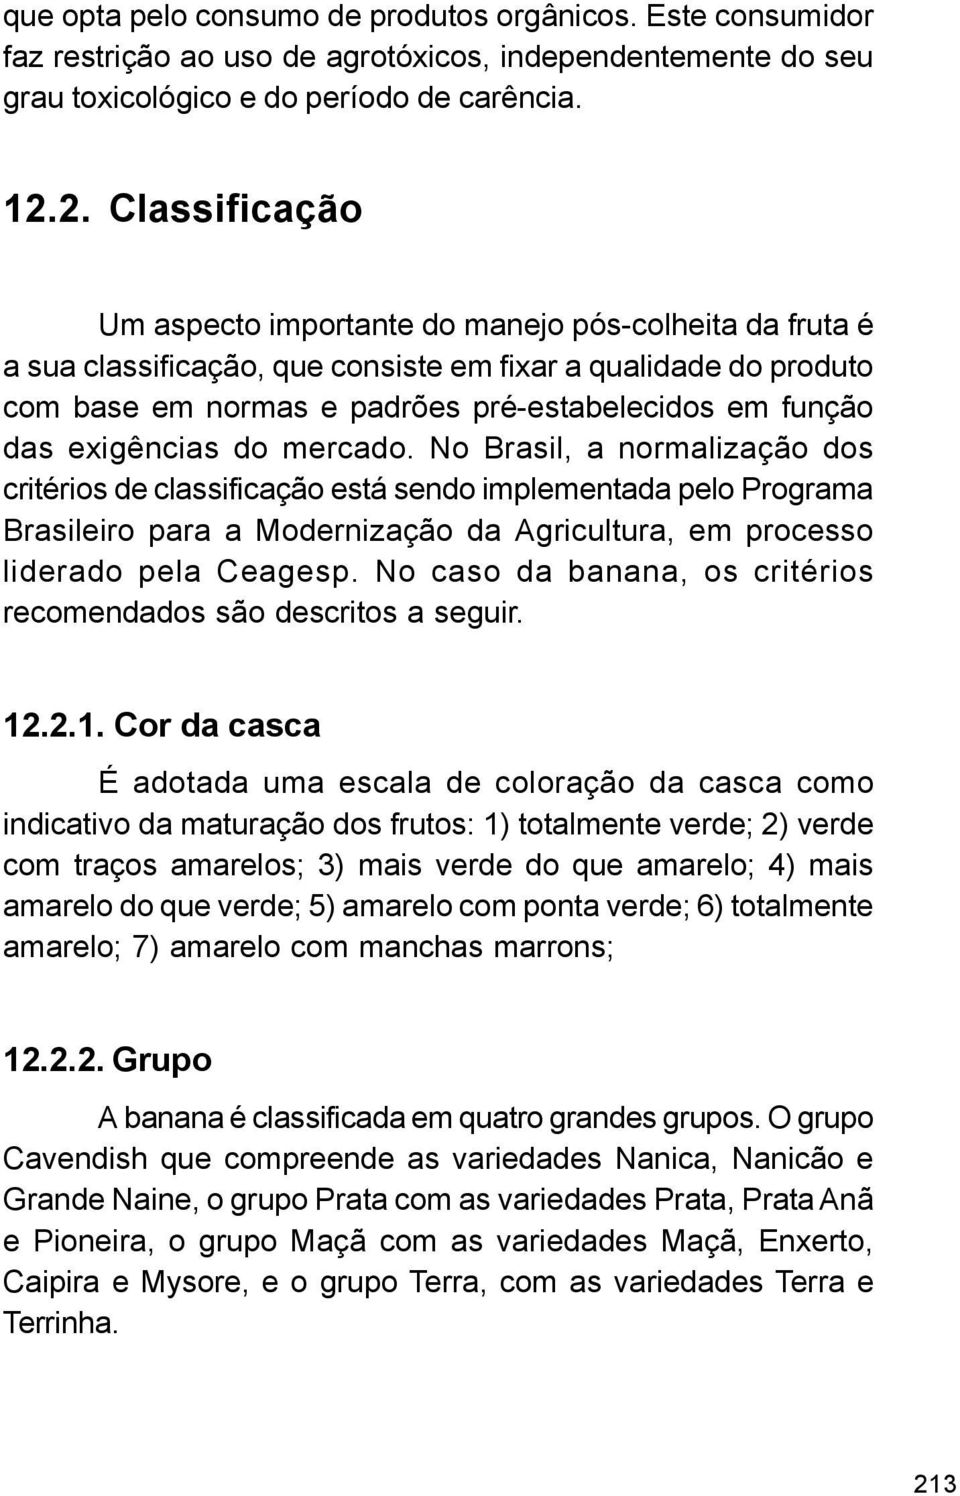 exigências do mercado. No Brasil, a normalização dos critérios de classificação está sendo implementada pelo Programa Brasileiro para a Modernização da Agricultura, em processo liderado pela Ceagesp.